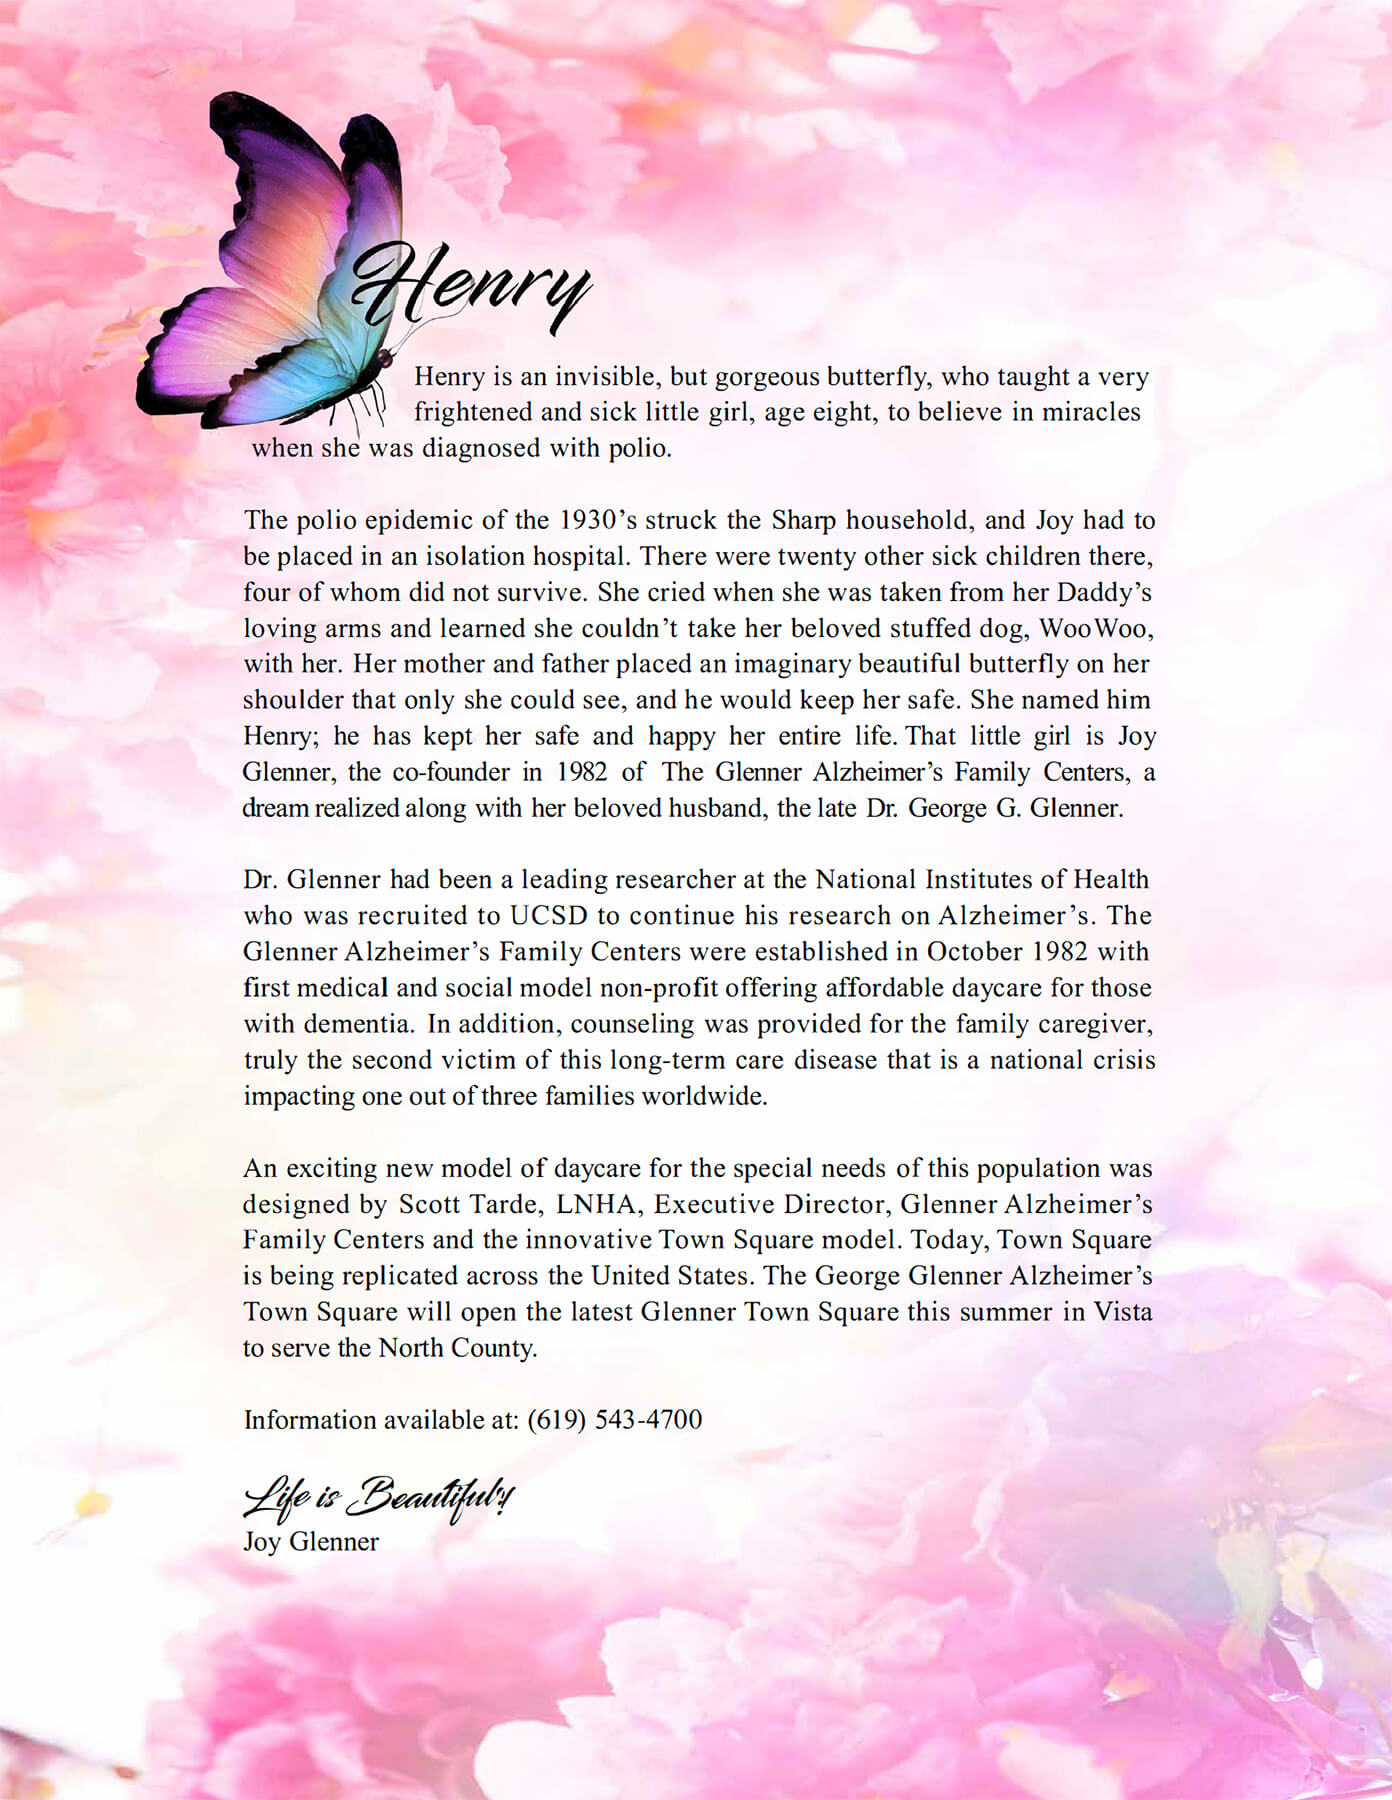 Henry Grant Letter from Joy Glenner